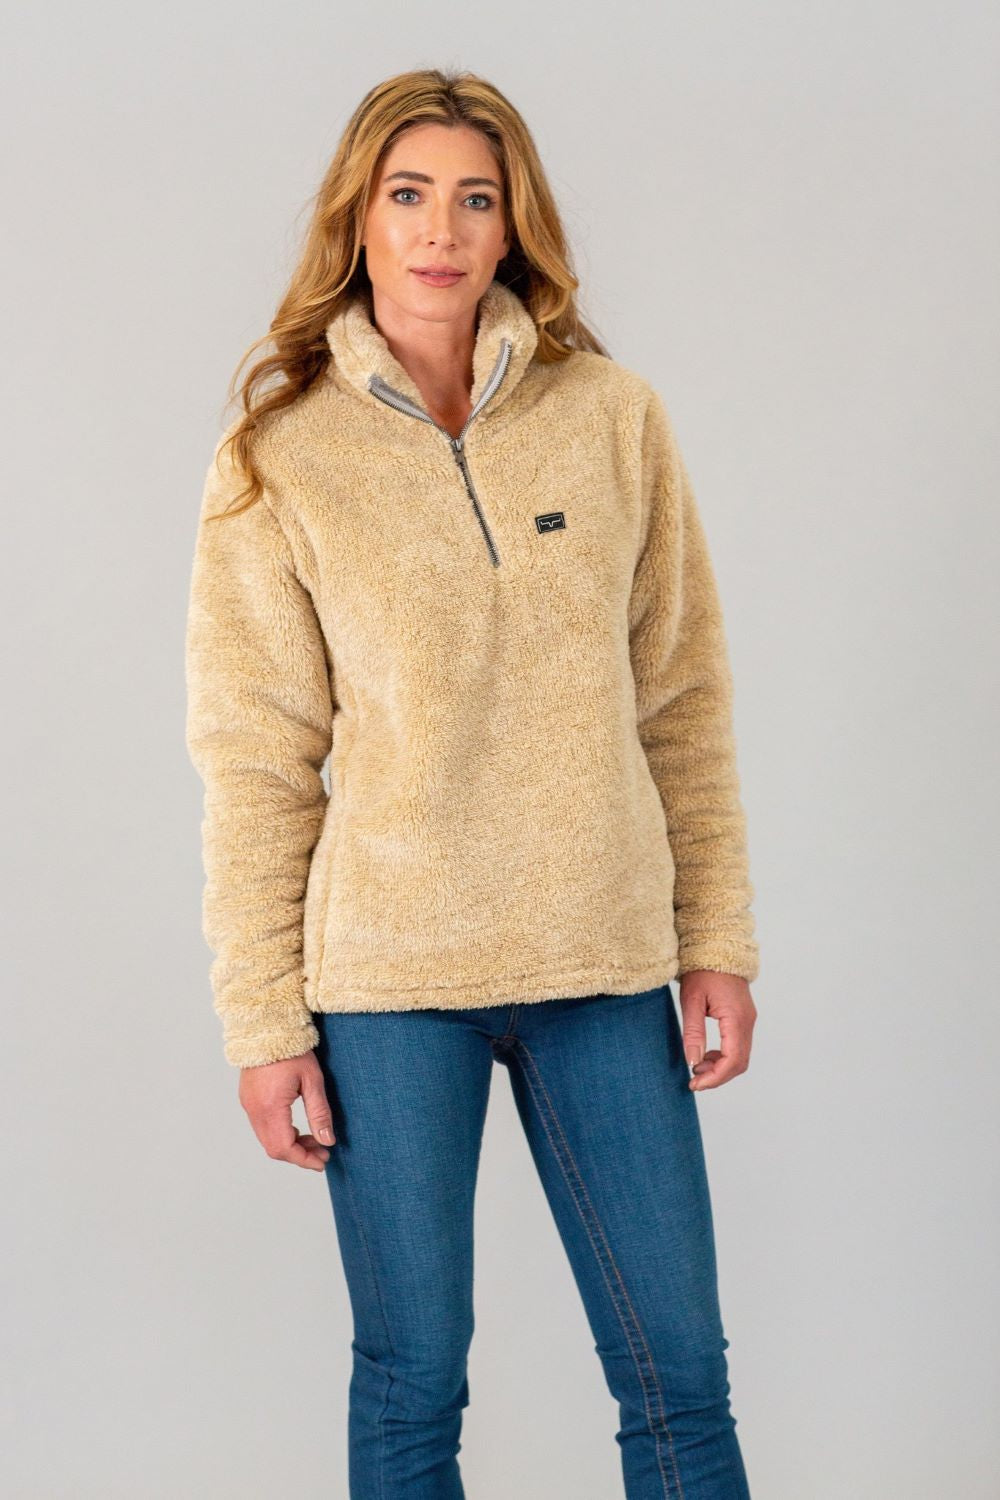 'Kimes Ranch' Women's Bourbon Sweater Fleece - Oatmeal